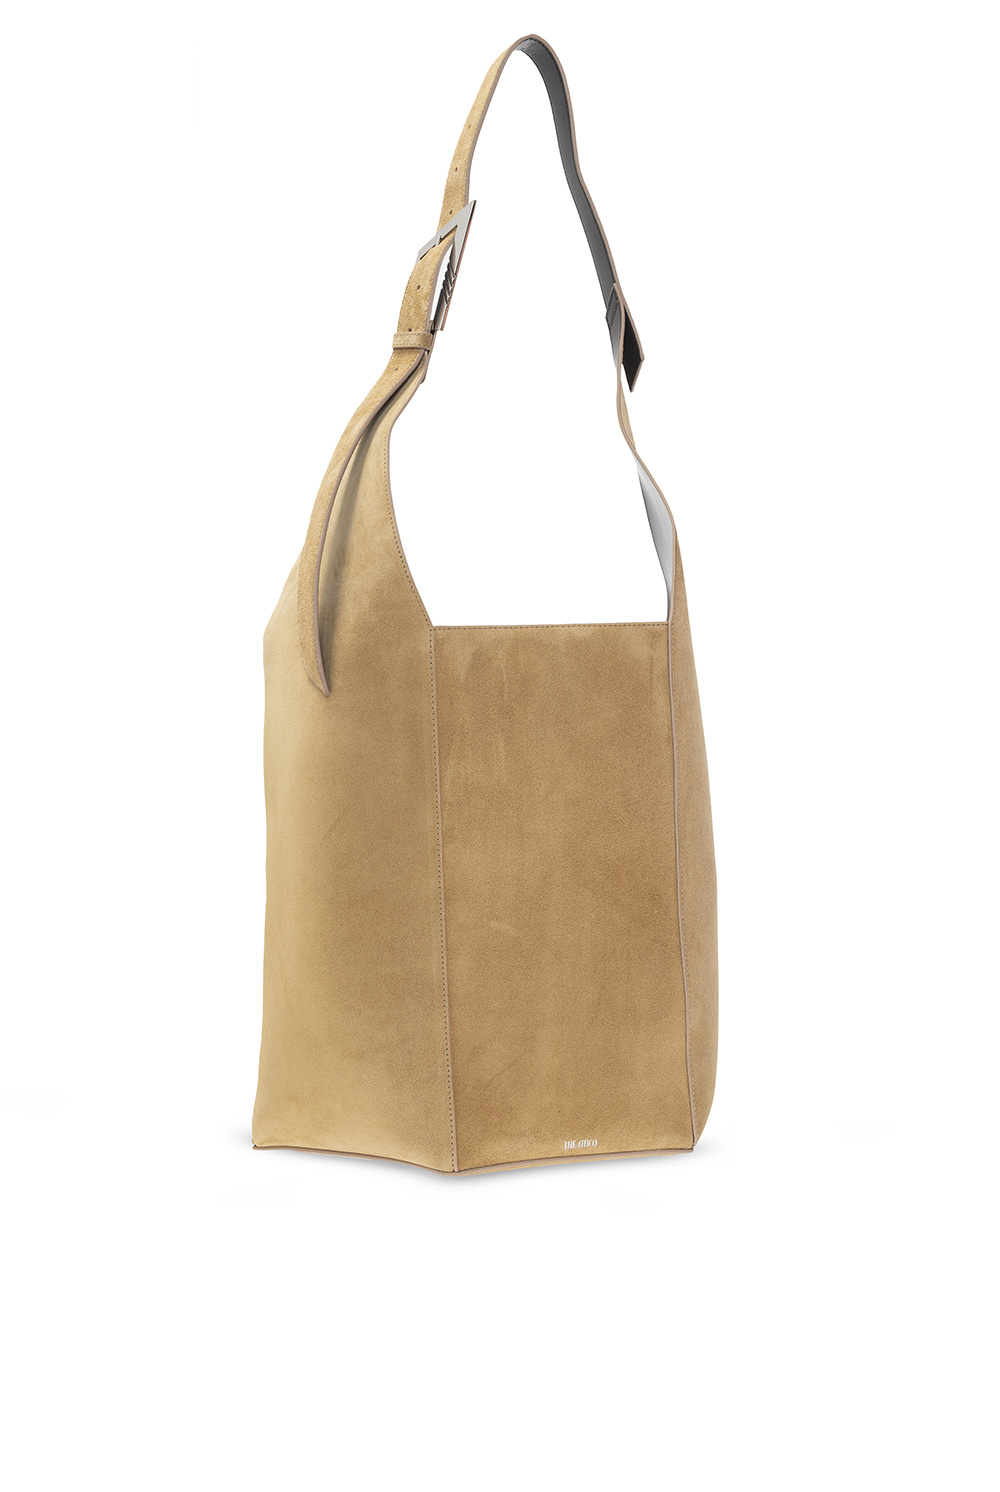 The Attico ‘12PM’ shopper Loubishore bag